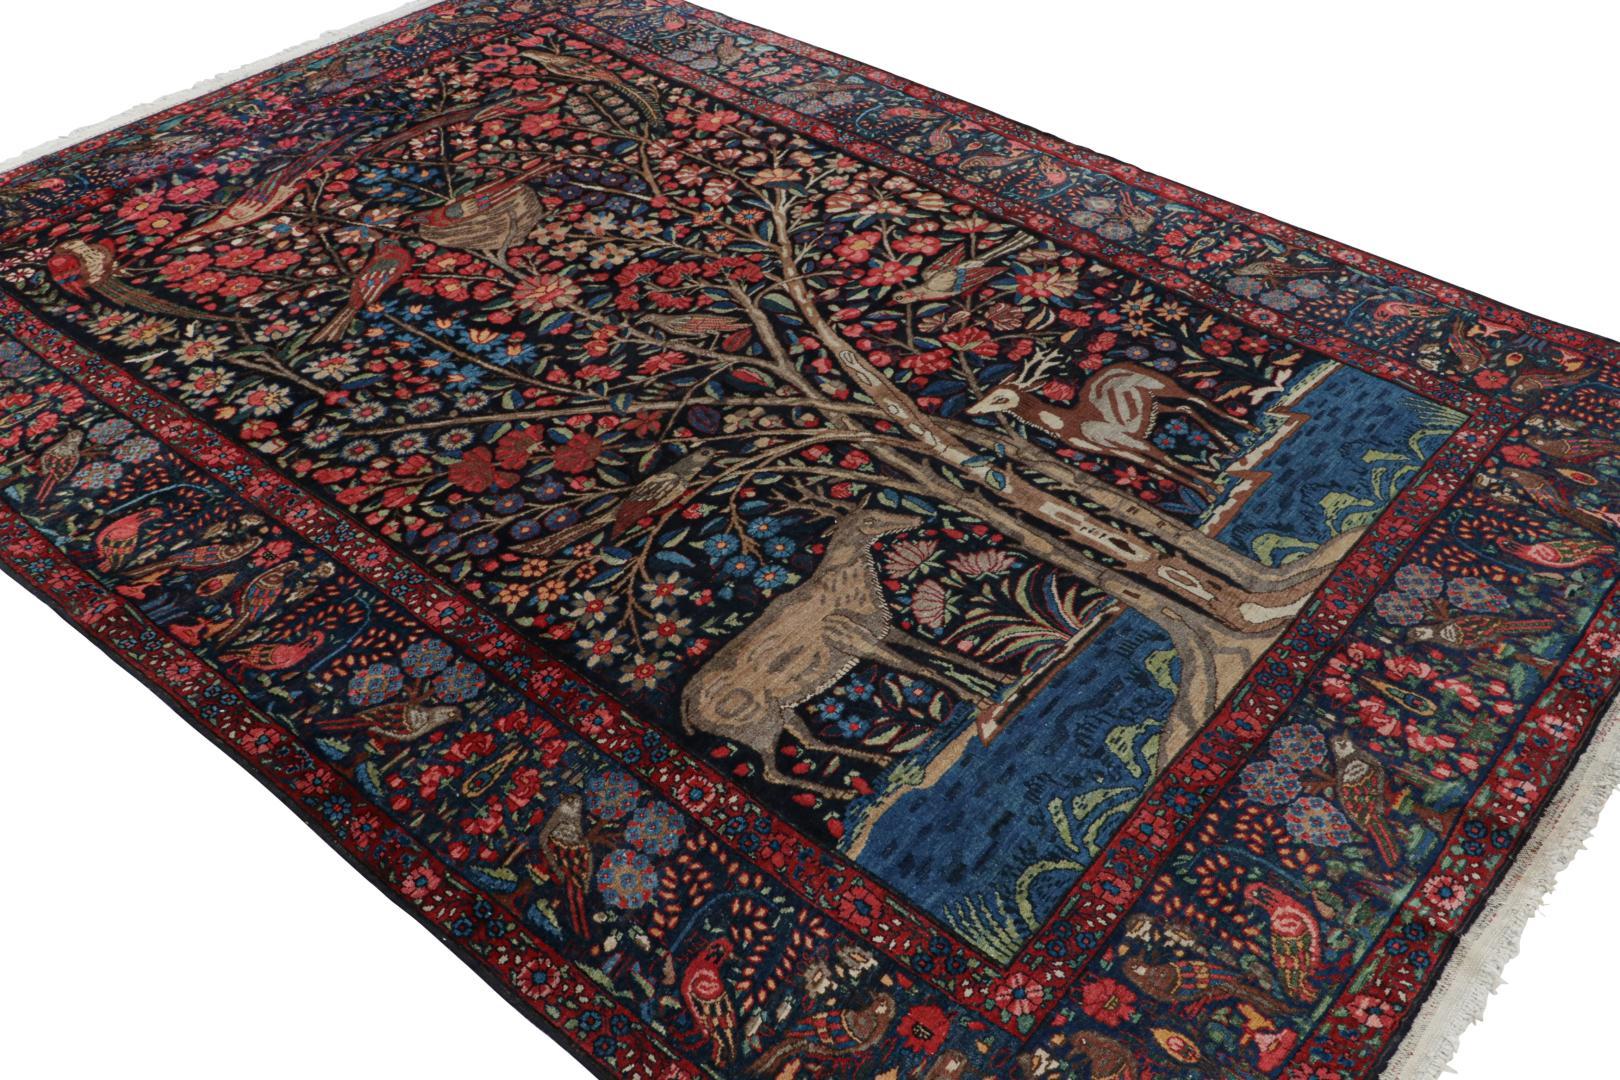 Dieser 7×11 große antike persische Bakhtiari-Teppich aus Wolle, handgeknüpft um 1920-1930, ist eine seltene und aufregende neue Rug & Kilim-Kuration. 

Über das Design:

Liebhaber des Kunsthandwerks werden dieses Stück Volkskunst wegen seiner